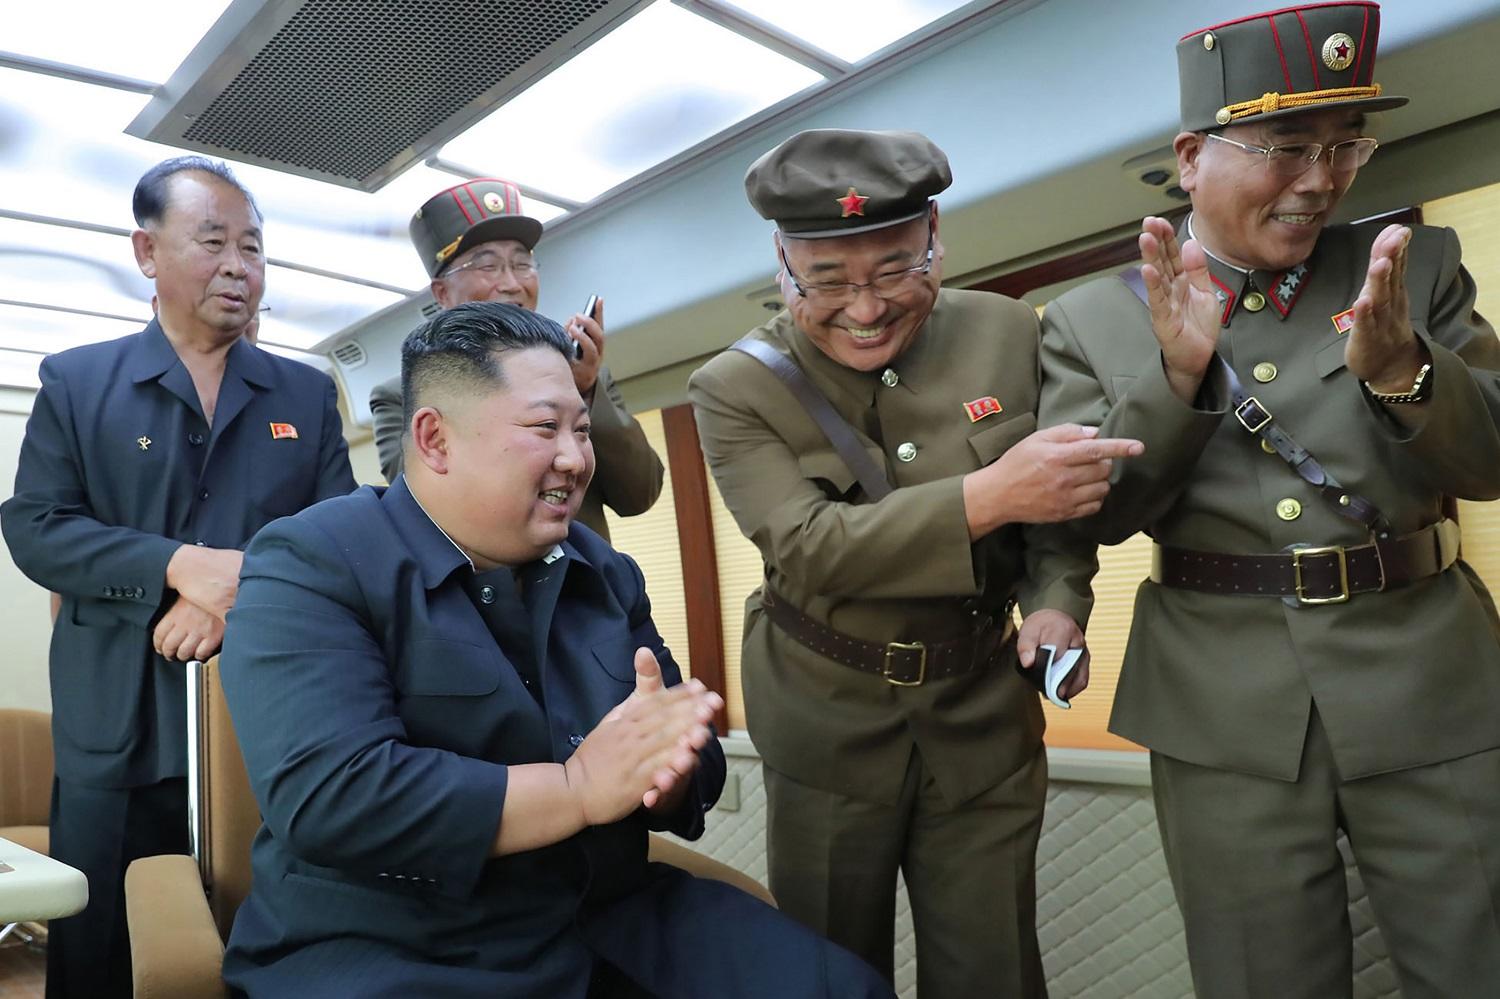 زعيم كوريا الشمالية كيم جونغ يحتفل بنجاح تجربة إطلاق سلاح جديد، الصورة التقطت في 16 أغسطس 2019 وأصدرت في 17 أغسطس. (أ ف ب)